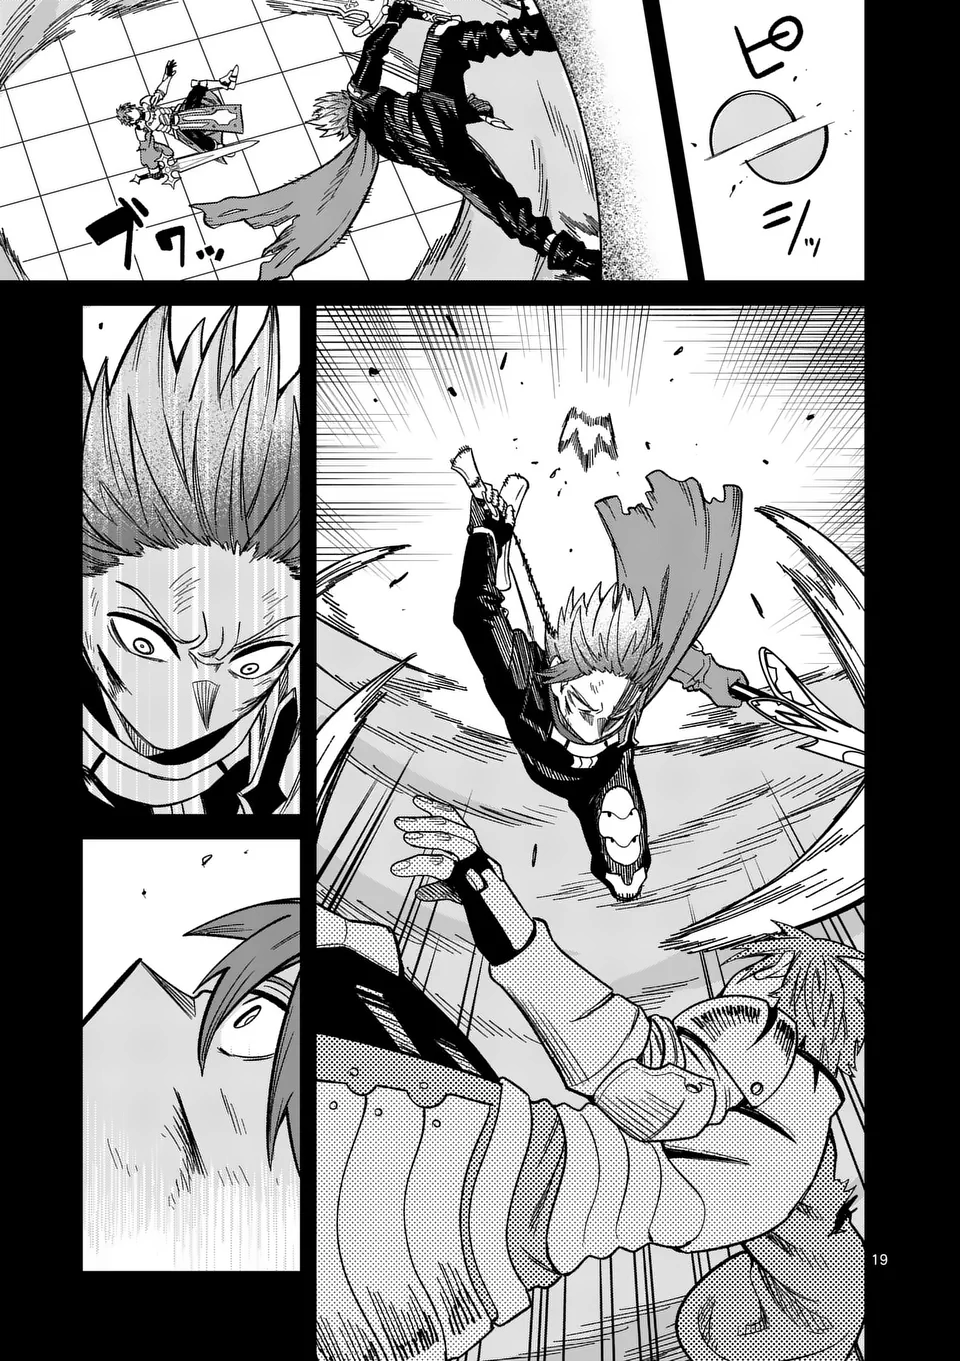 Power-Hara Genkai Yuusha, Maougun kara Koutaiguu de Scout sareru - Chapter 14 - Page 19